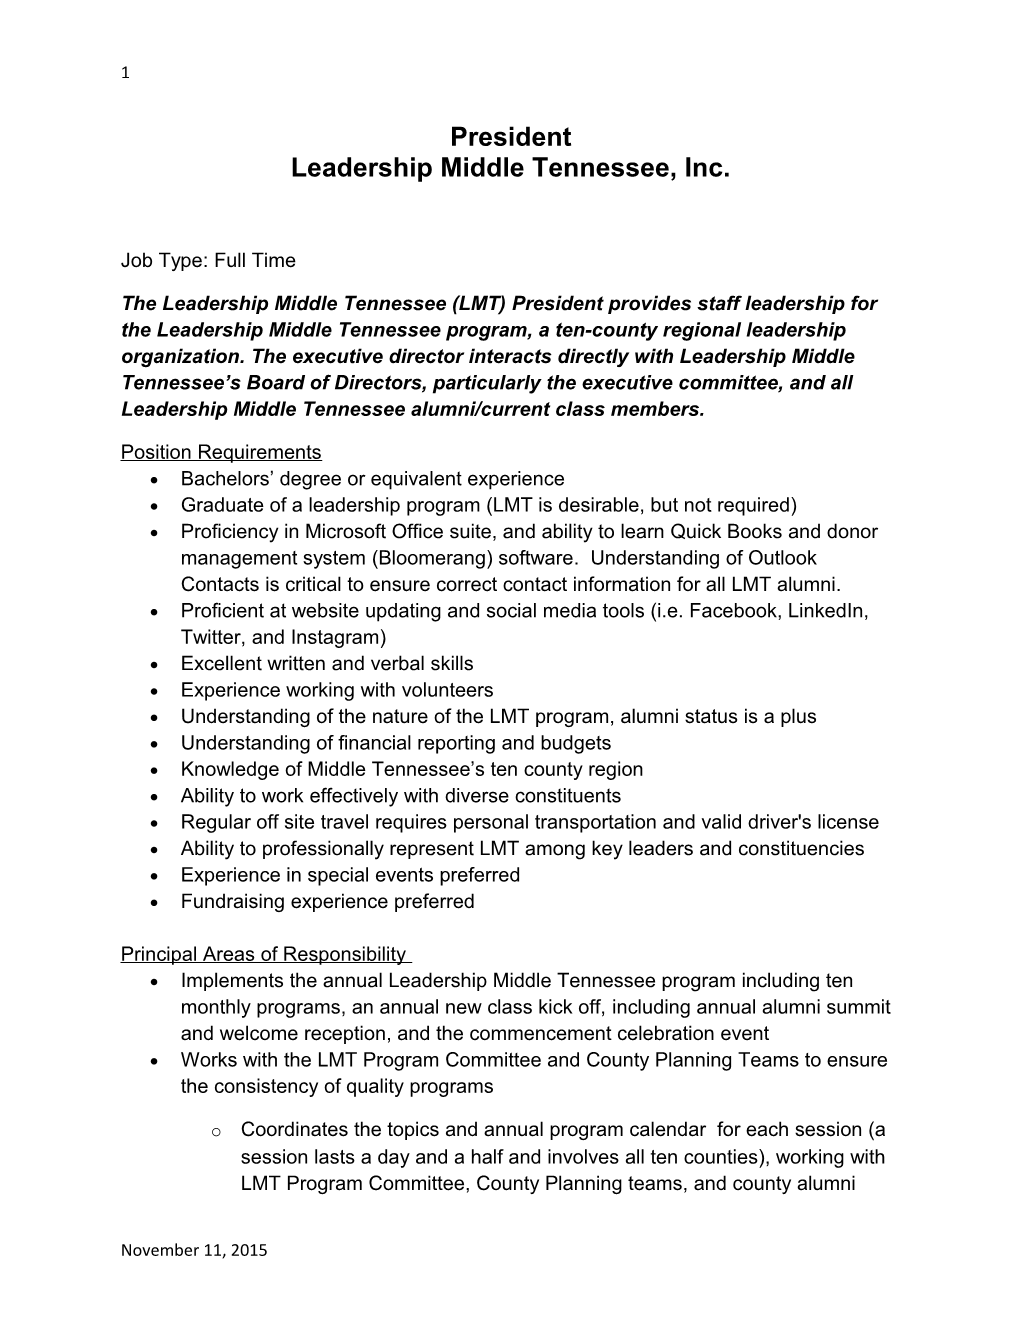 Leadership Middle Tennessee, Inc